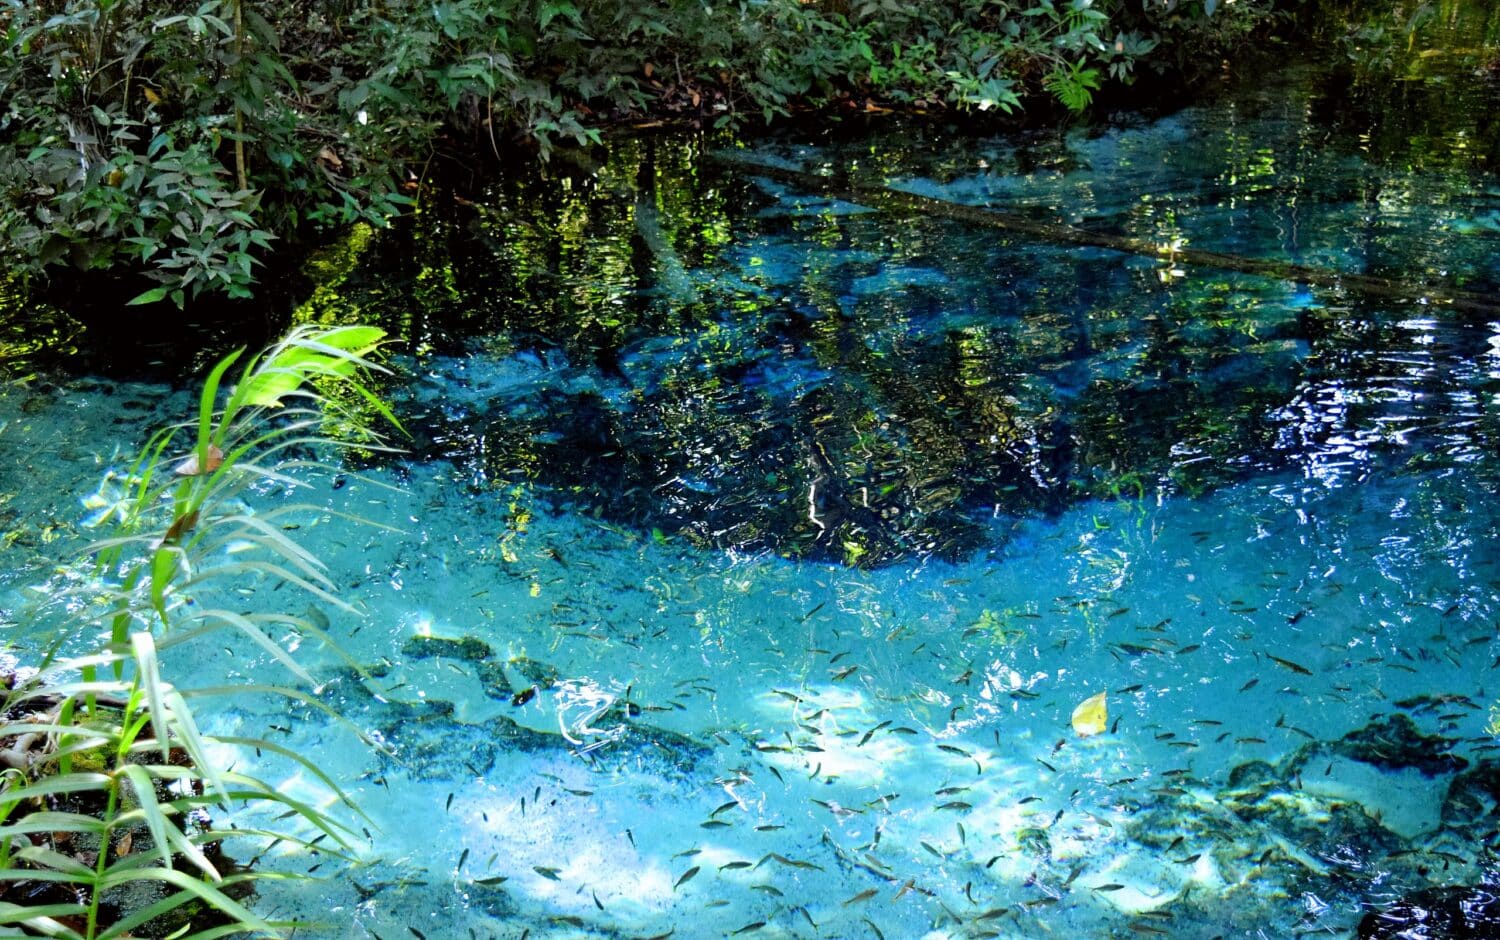 Aquário Encantado, um dos lagos cristalinos de Nobres, no Mato Grosso, com águas límpidas e azuis, além de vegetação preservada nos arredores e peixes nadando livremente